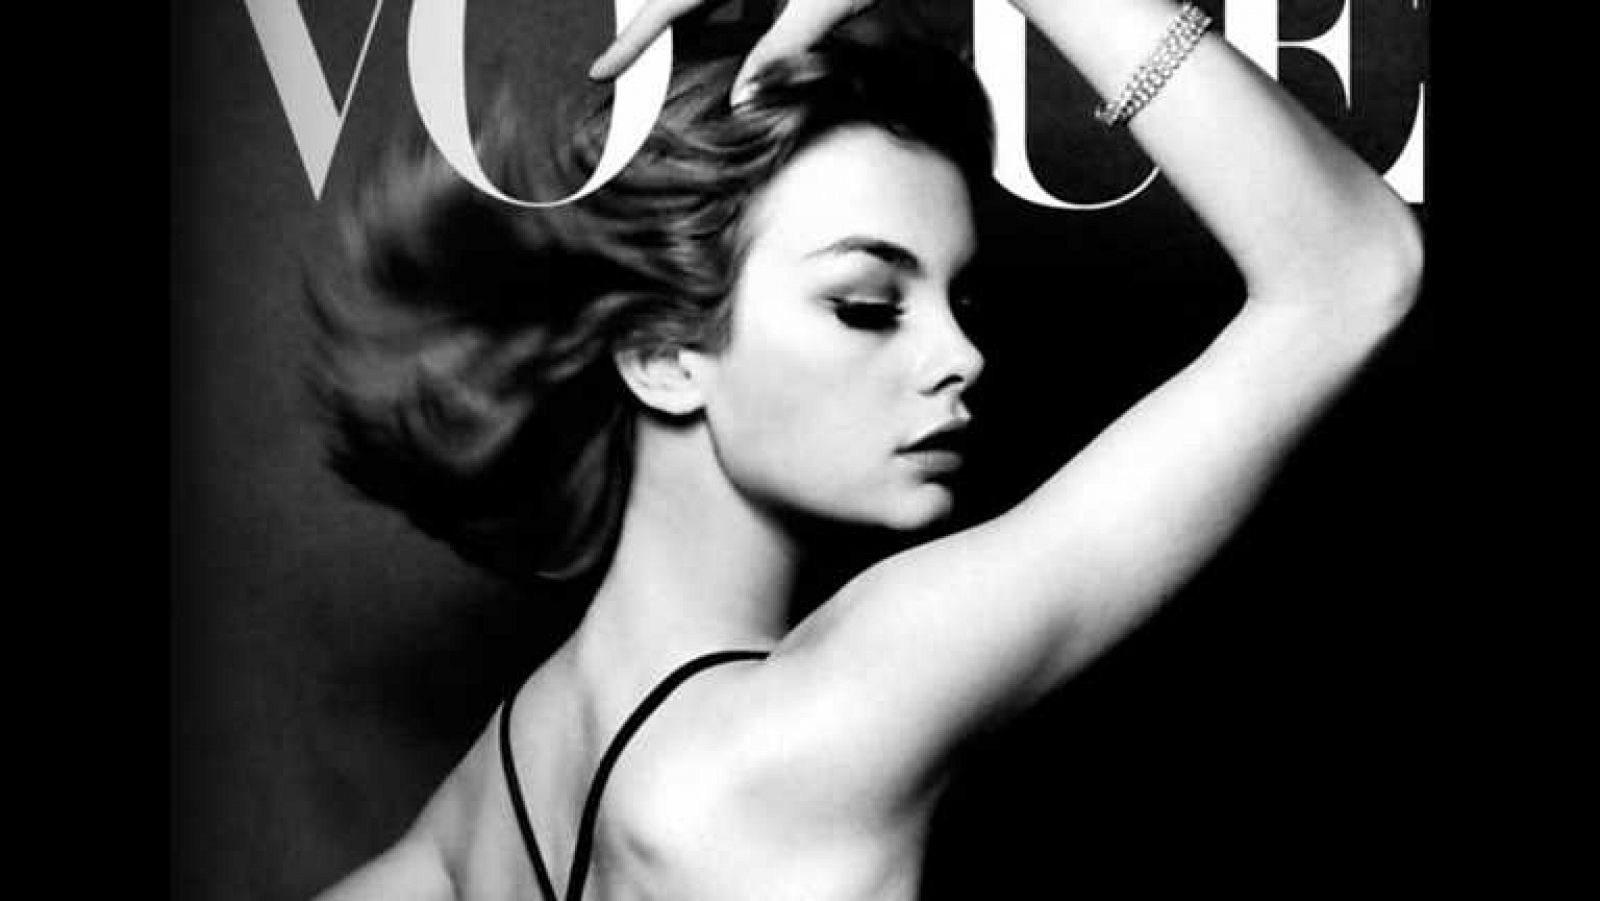 La noche temática - Vogue: el número de septiembre - Ver ahora